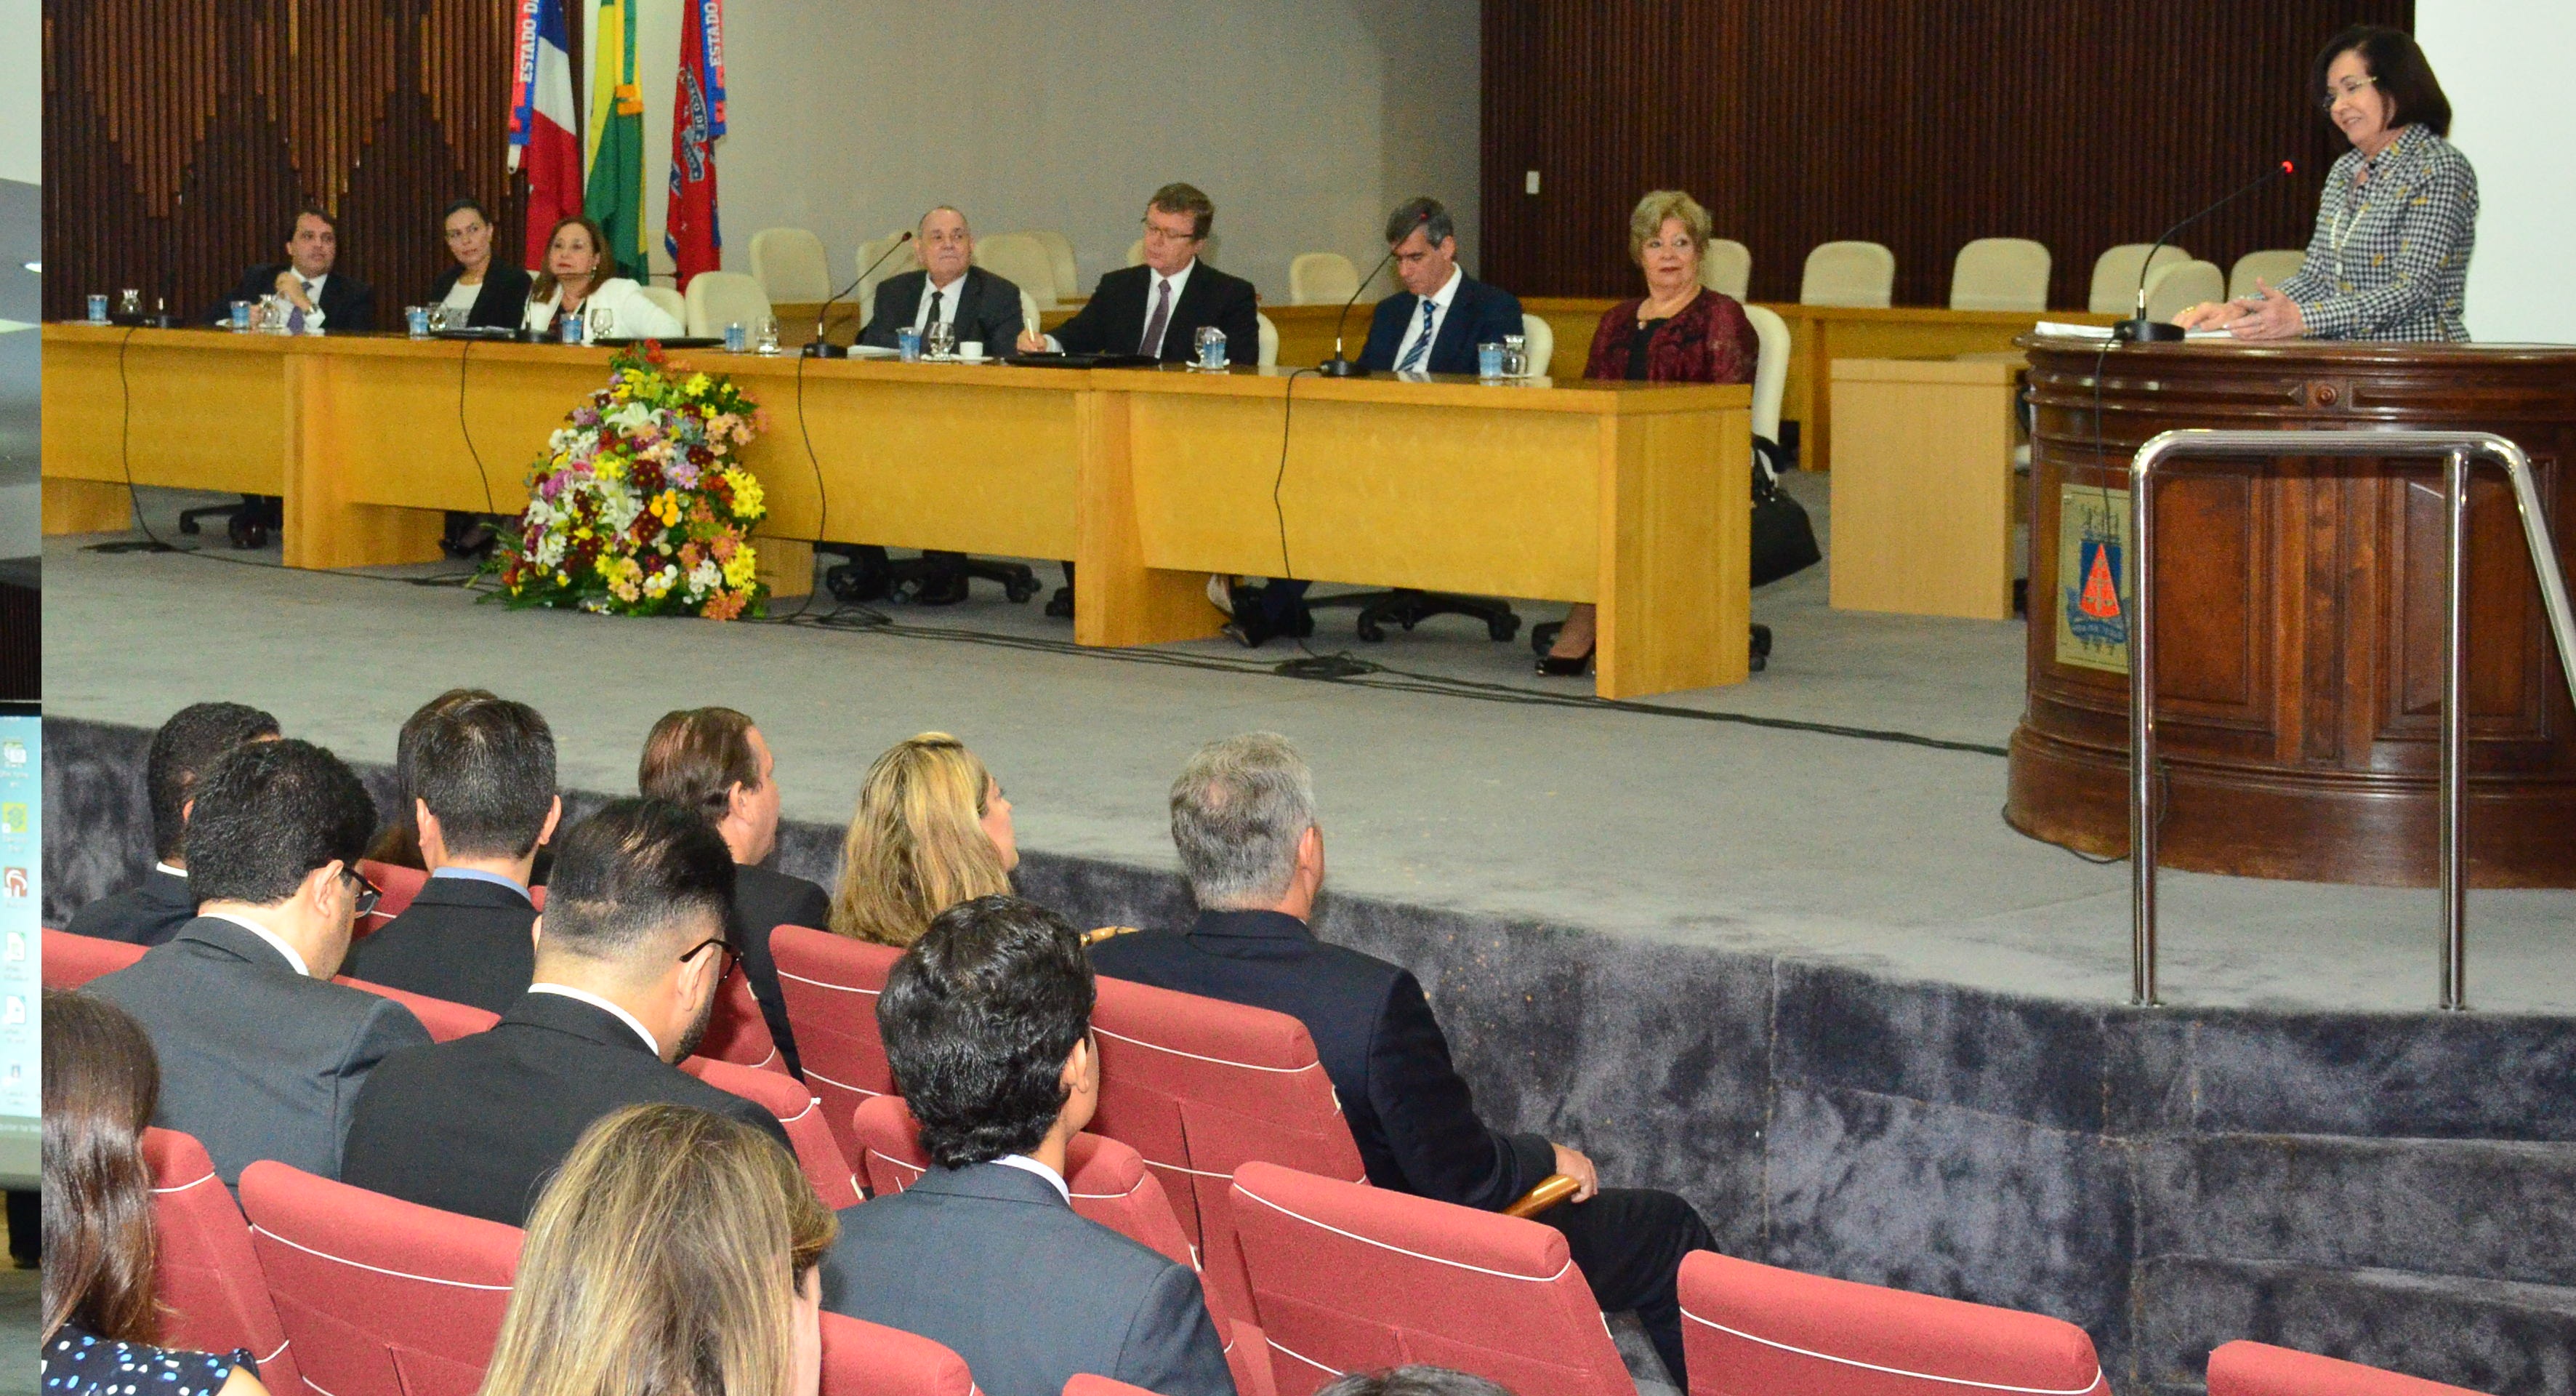 Presidente do STJ, Ministros e Assessores palestraram sobre Gestão de Precedentes nesta segunda-feira no Tribunal de Justiça do Estado da Bahia